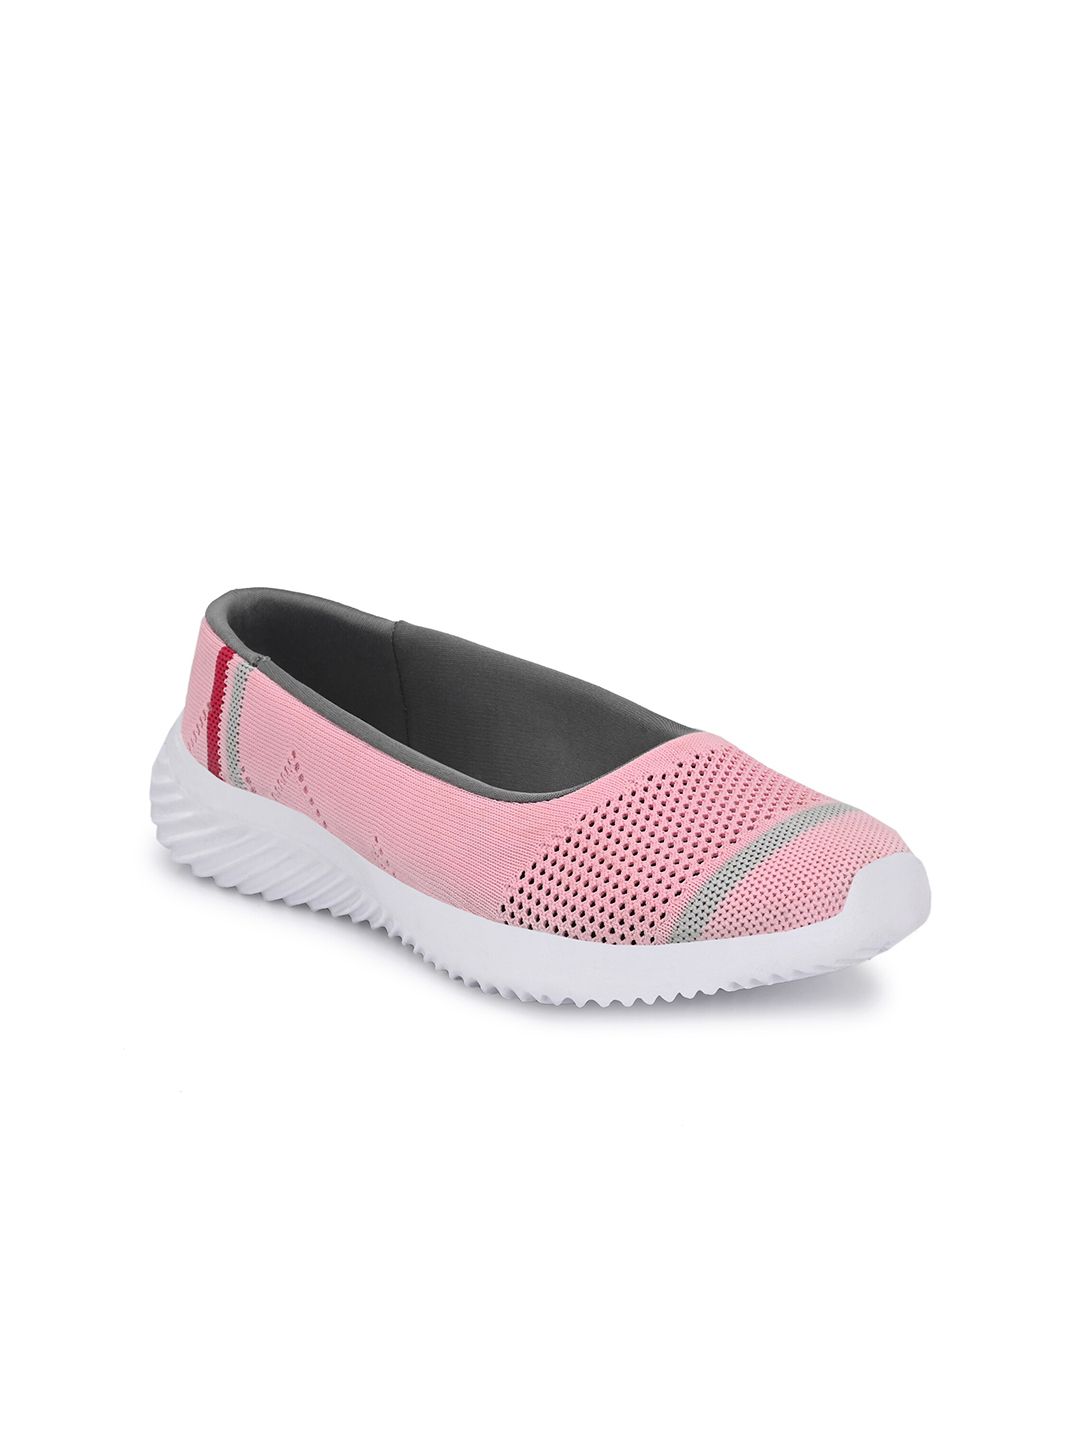 Yuuki Women Pink Mesh Walking Non-Marking Slip On Shoes Price in India